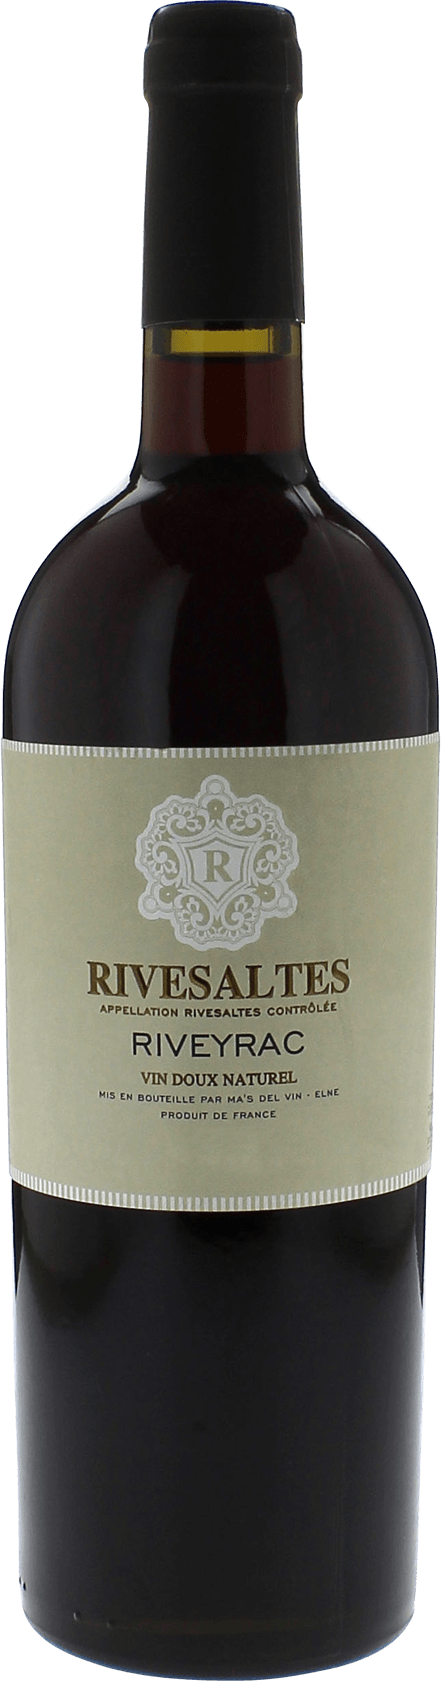 Rivesaltes riveyrac 1981 Vin doux naturel Rivesaltes, Vin doux naturel